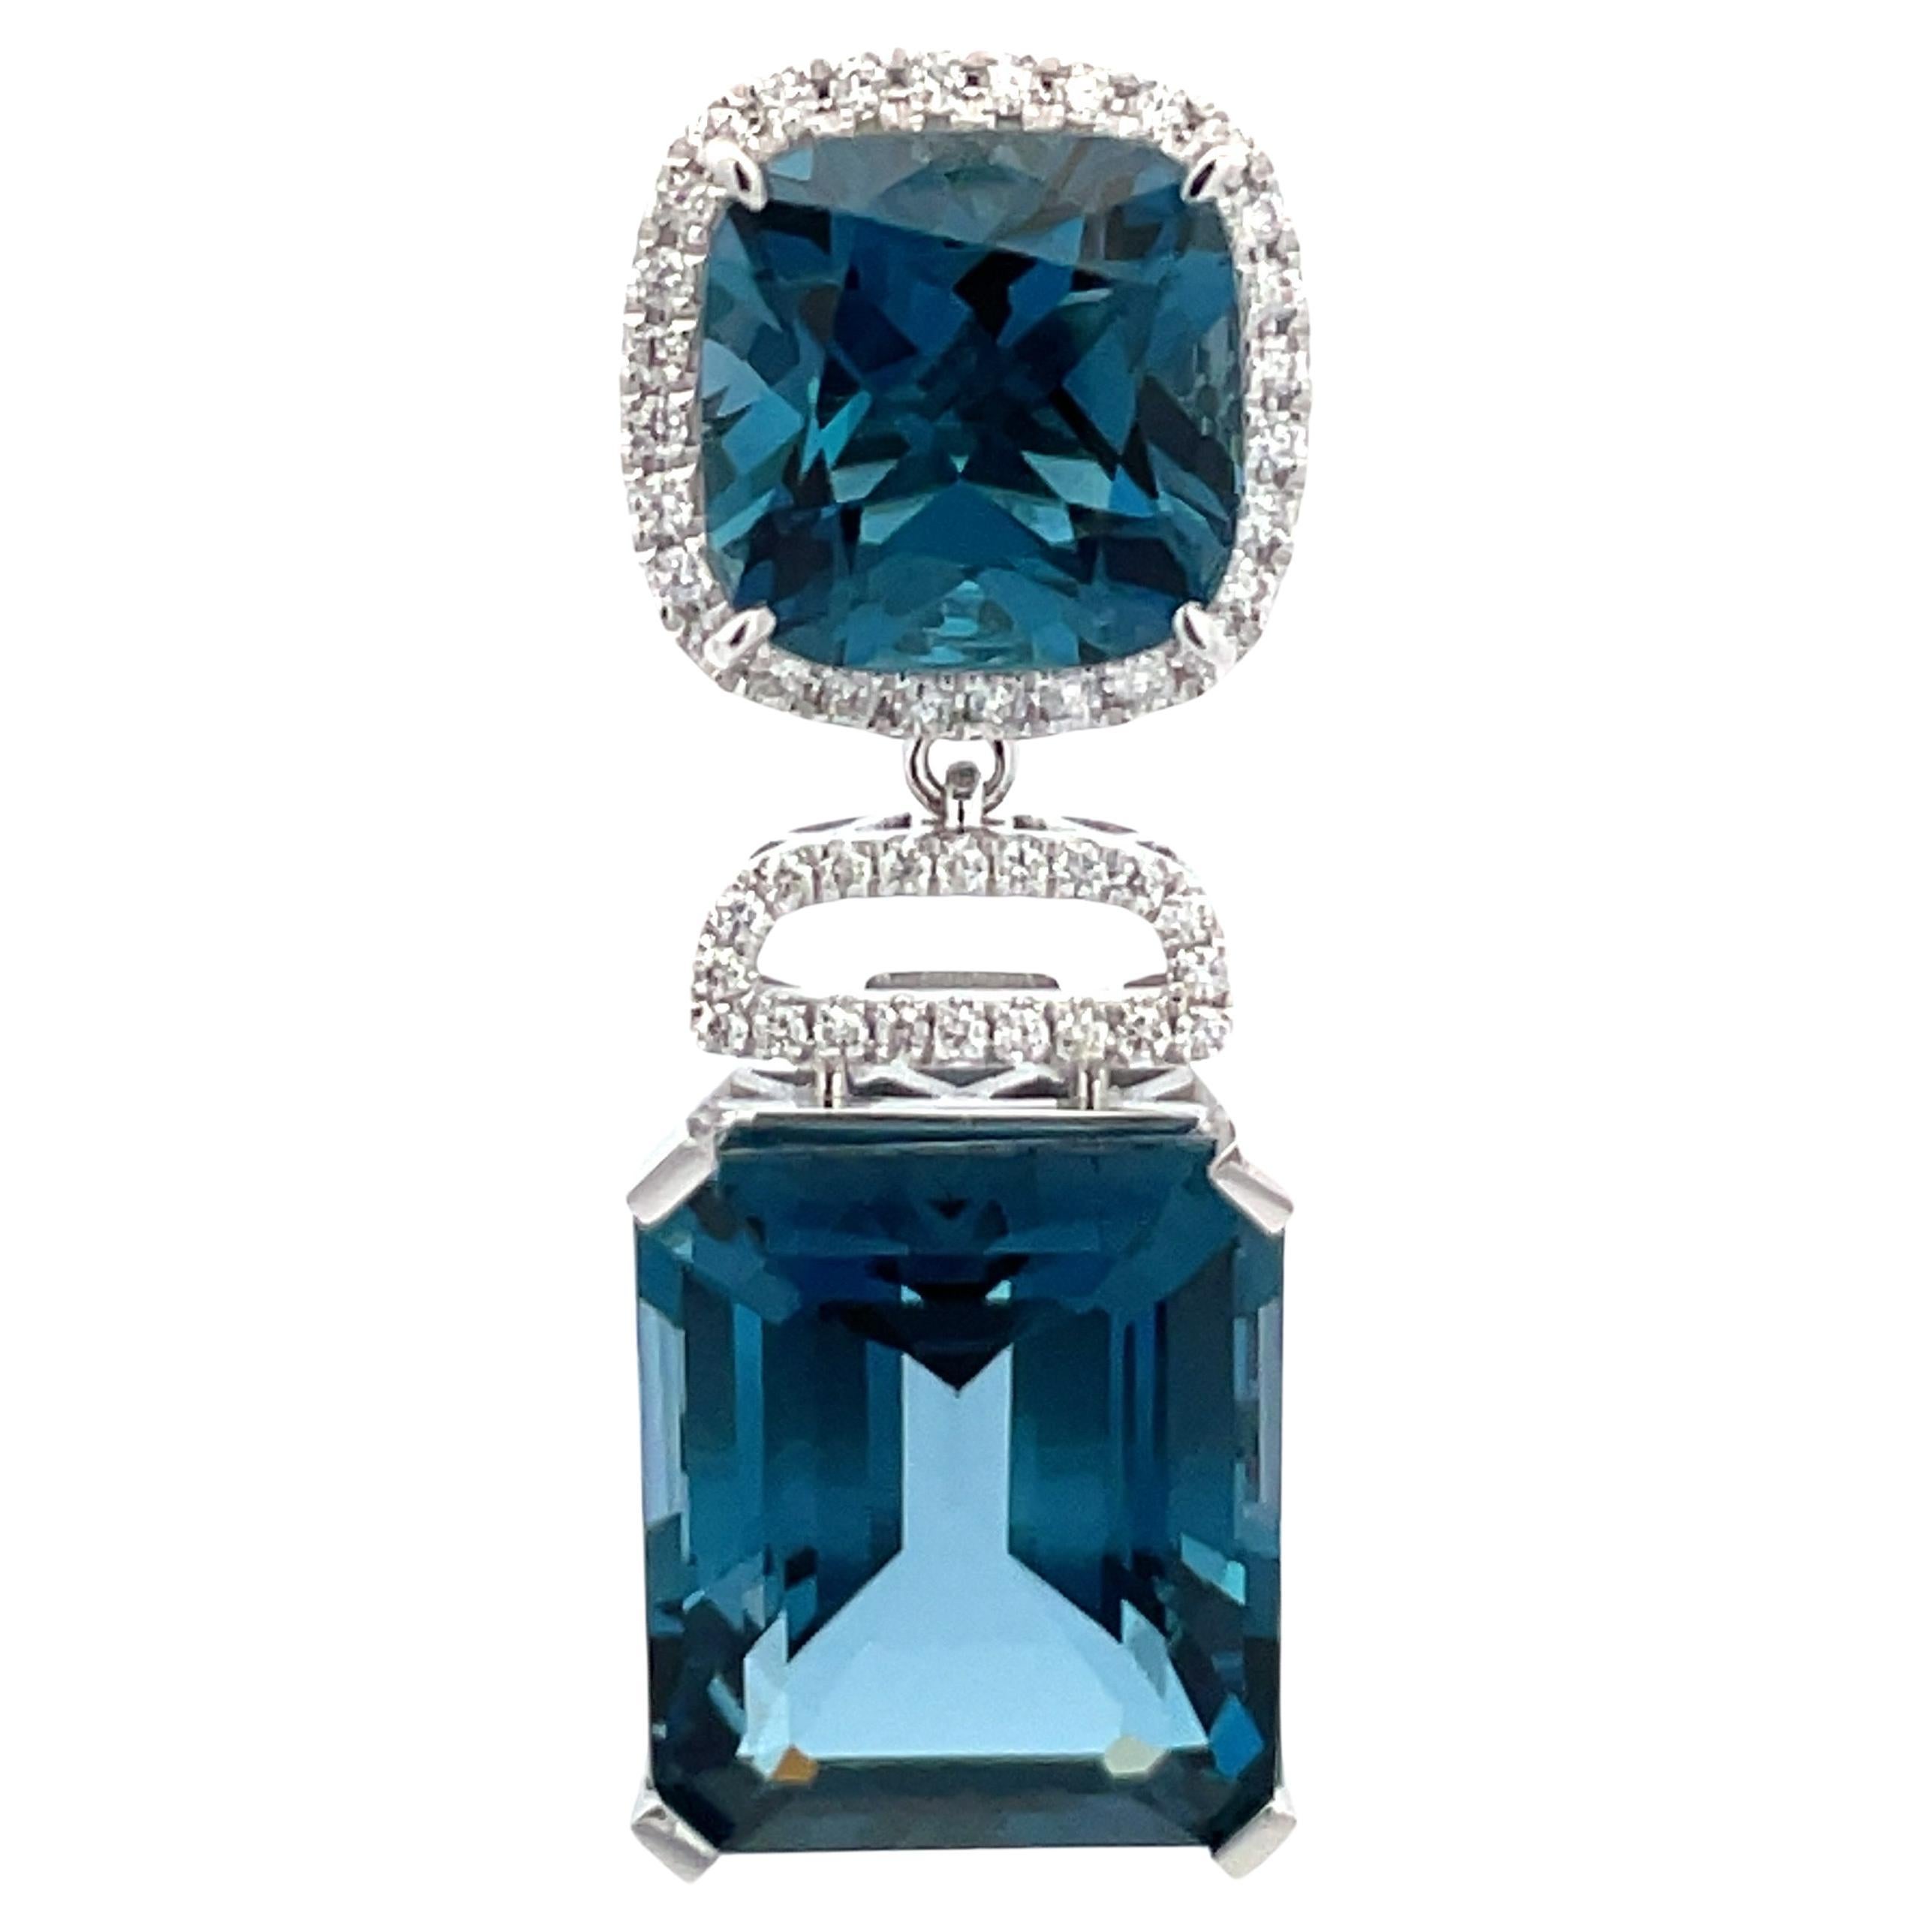 Boucles d'oreilles pendantes en or blanc 14 carats comprenant deux topazes bleues de Londres coussin pesant 9,83 carats, une taille émeraude pesant 25,34 et un halo de diamants contenant 96 brillants ronds, 0,55 carats.